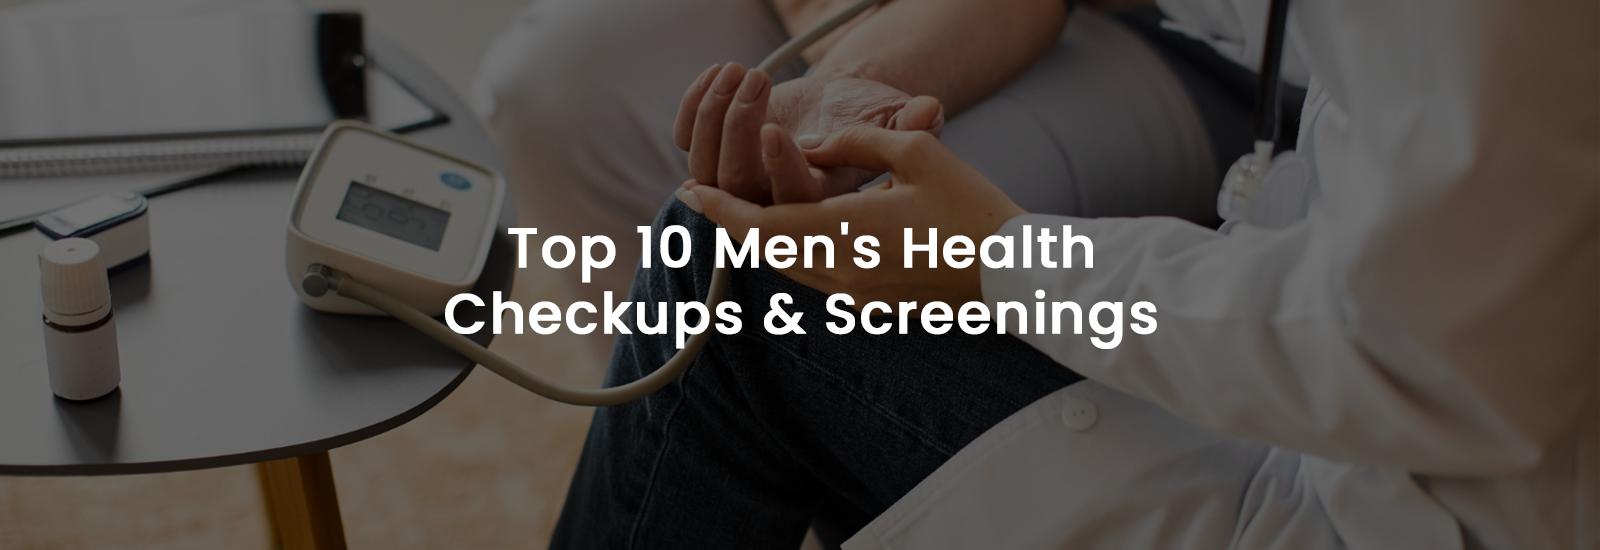 Top 10 Men’s Health Checkups and Screenings